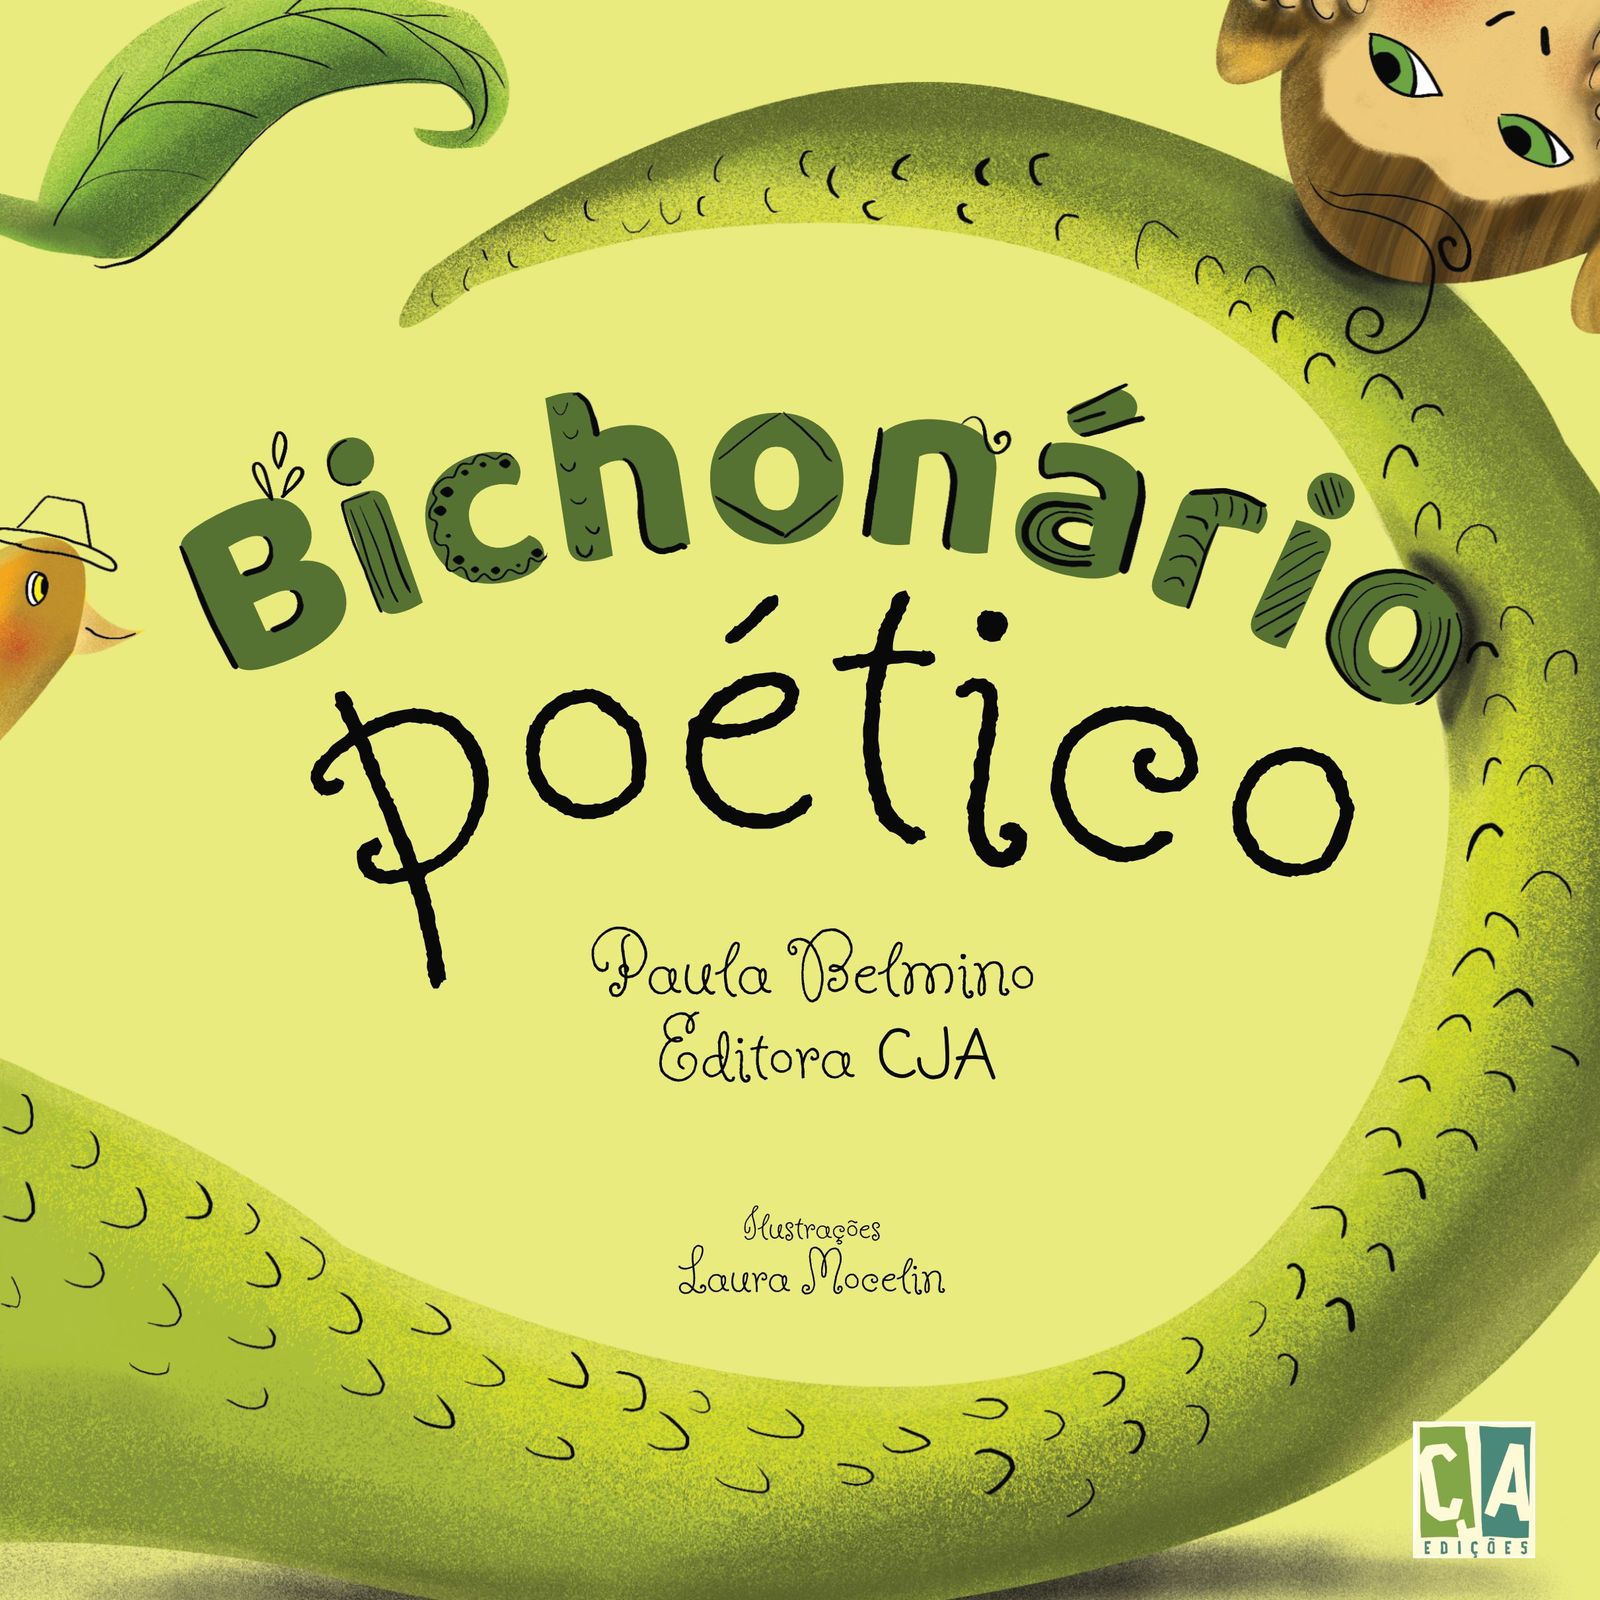 Book cover for Bichonário Poético.